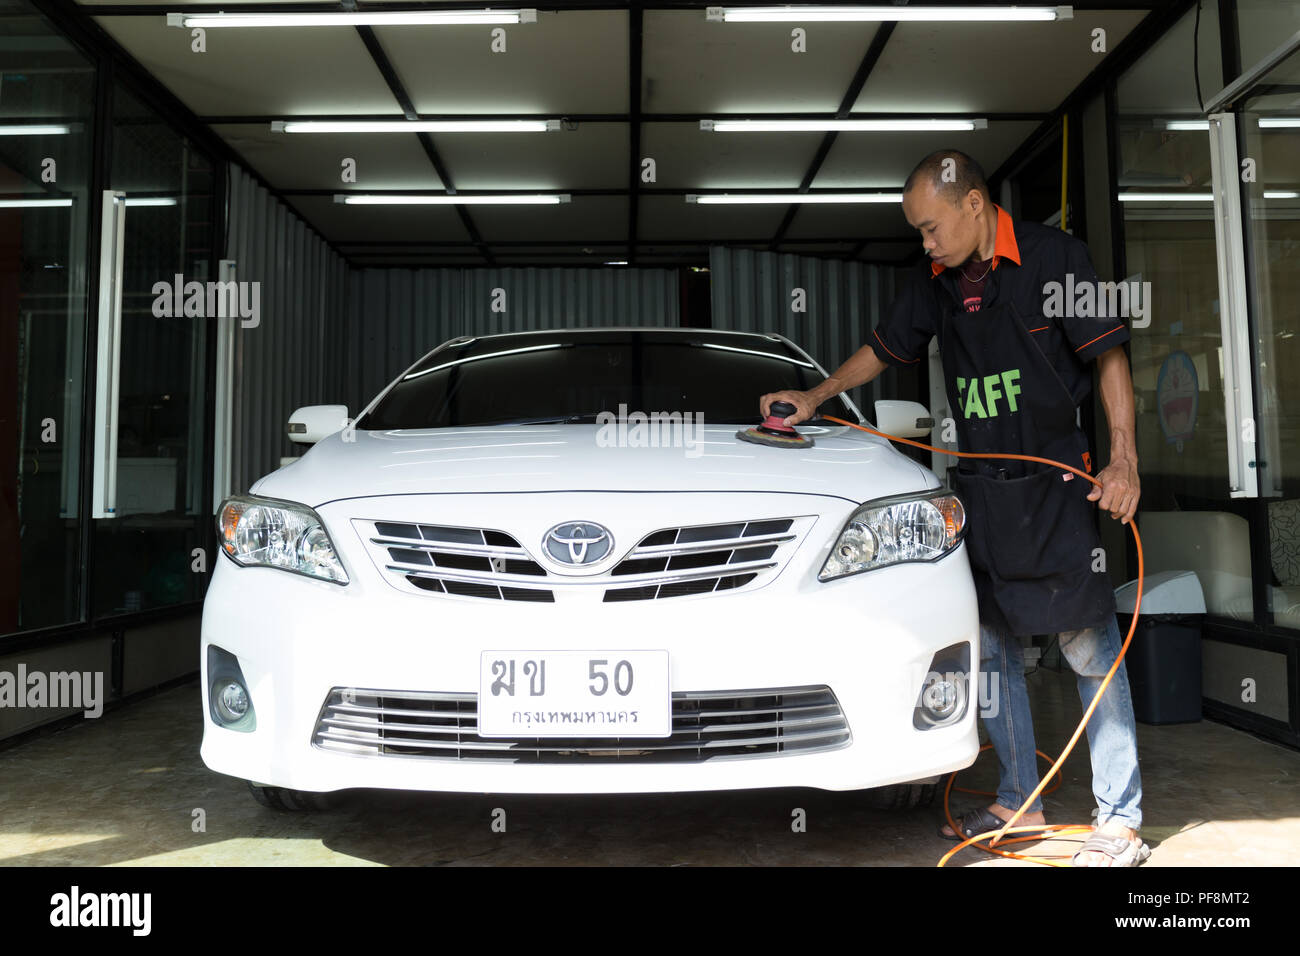 Jan, 28, 60 - à Nong carwash, Bangkok Thaïlande - Logo TOYOTA sur une voiture , équipier part le polissage en lavage de voiture lavage de voiture. Banque D'Images